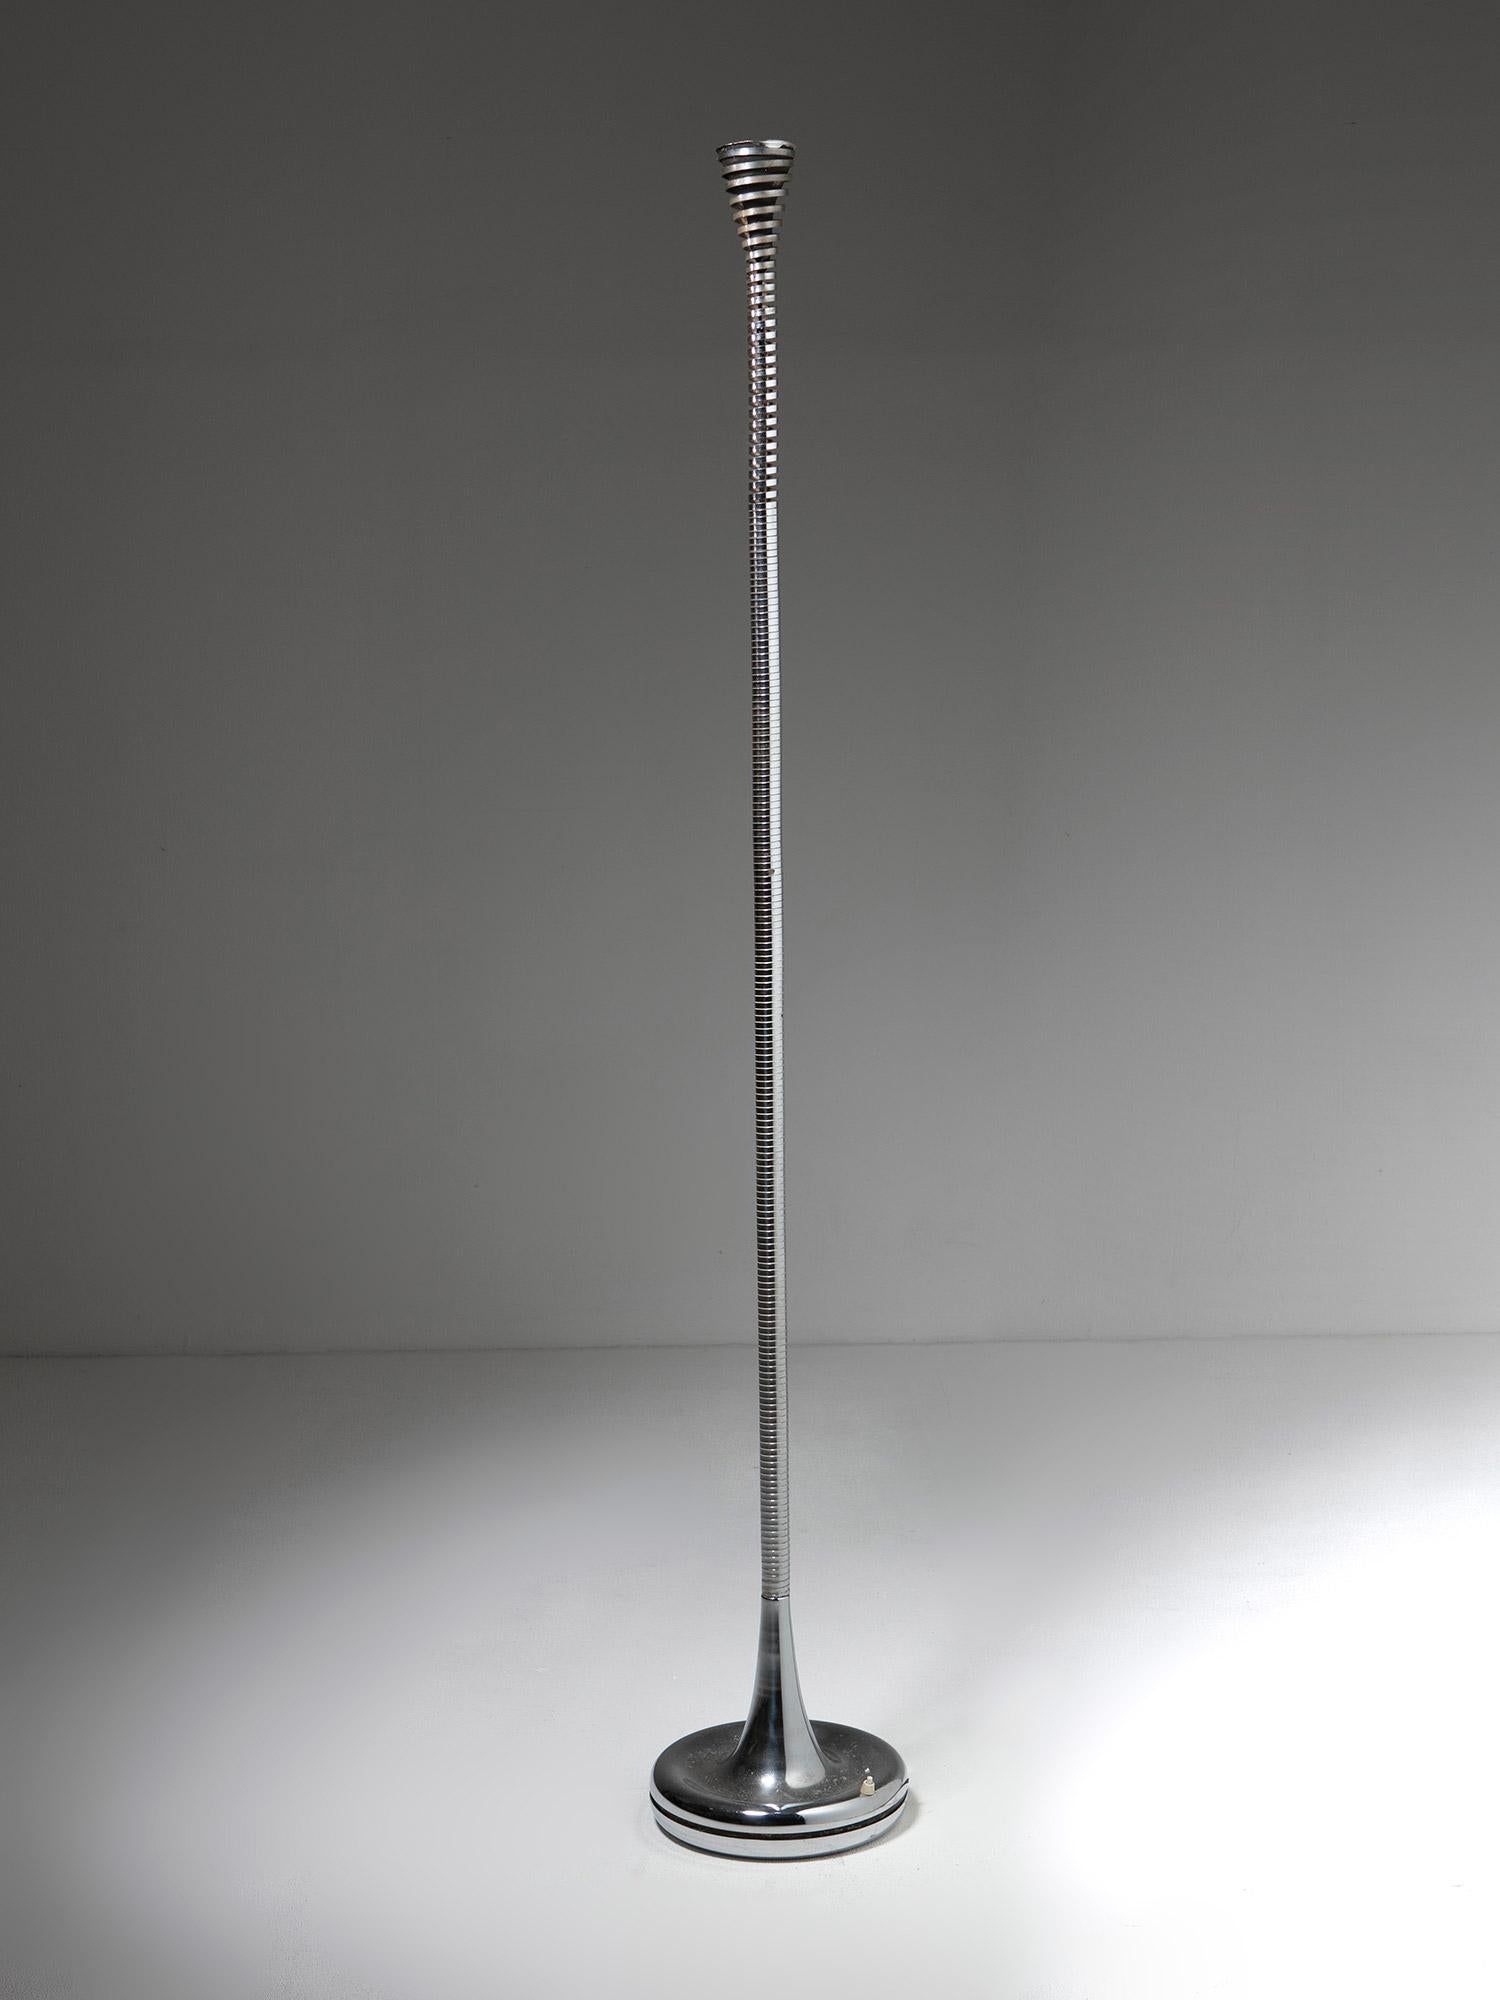 Stehleuchte Molla Modell D901 von Eleonore Peduzzi Riva für Candle.
Verchromte Stahllampe mit Halogenlichtquelle.